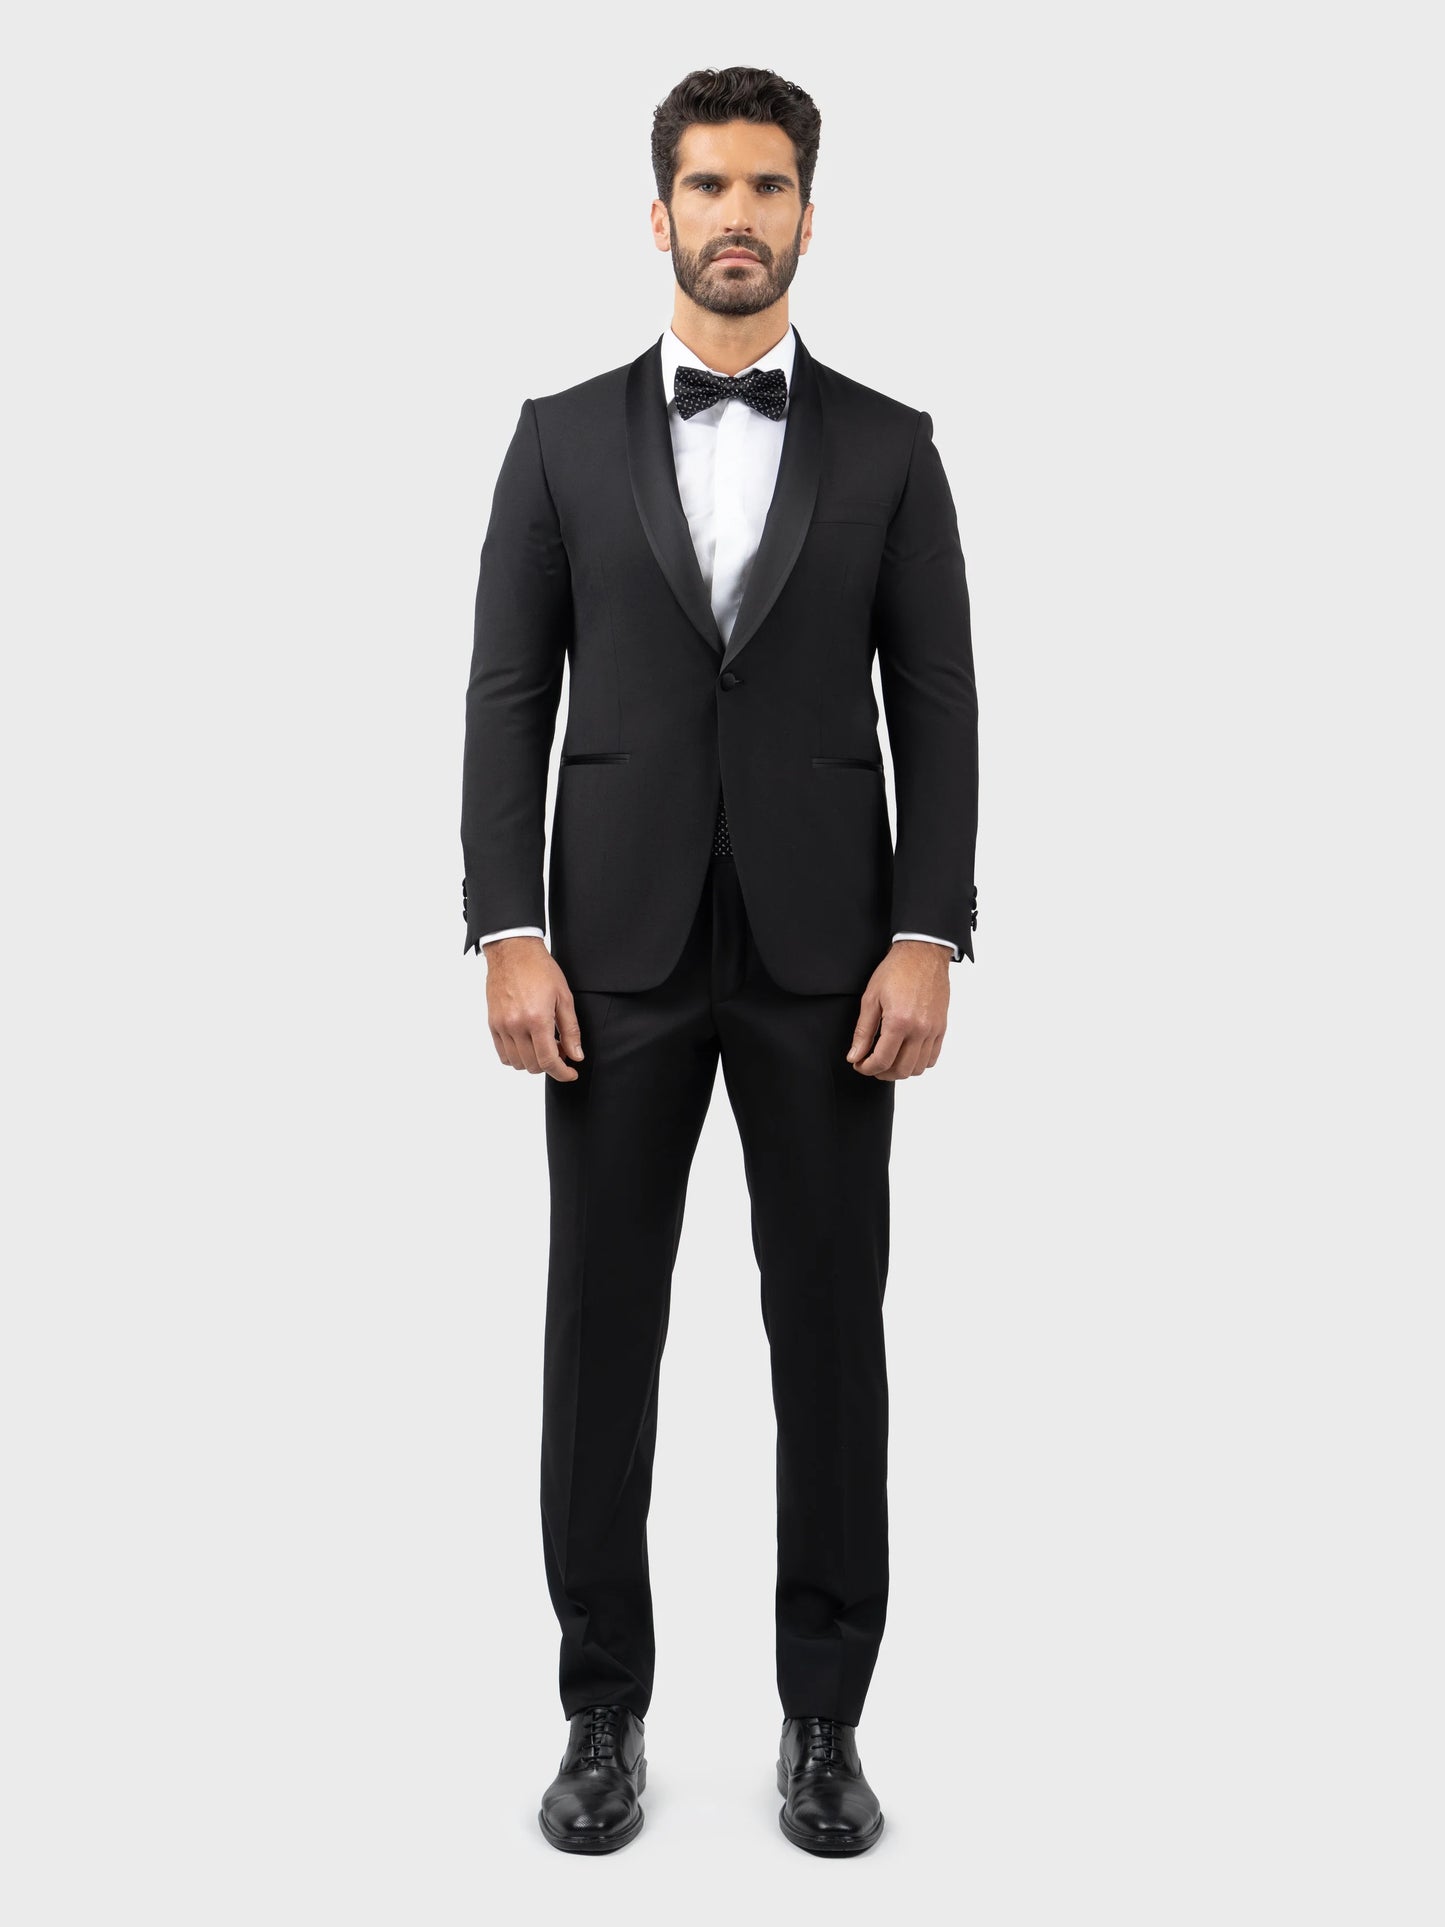 SFC150 Coimbra Suit